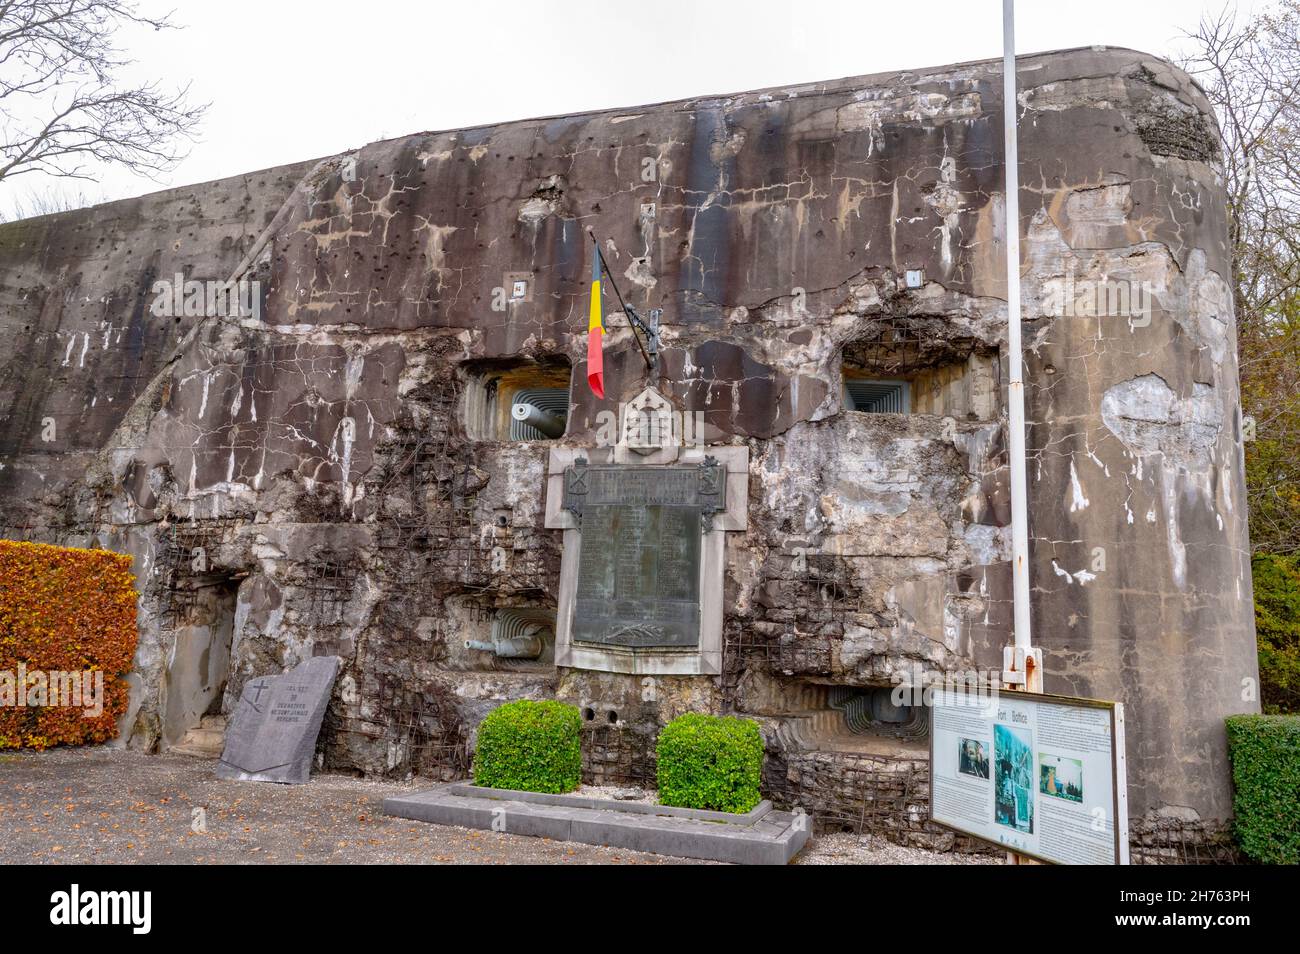 Das Fort Battice ist eine nach 1934 in der Nähe der gleichnamigen Ortschaft und etwa 20 km östlich von Lüttich erbaute belgische Festungsanlage Foto Stock